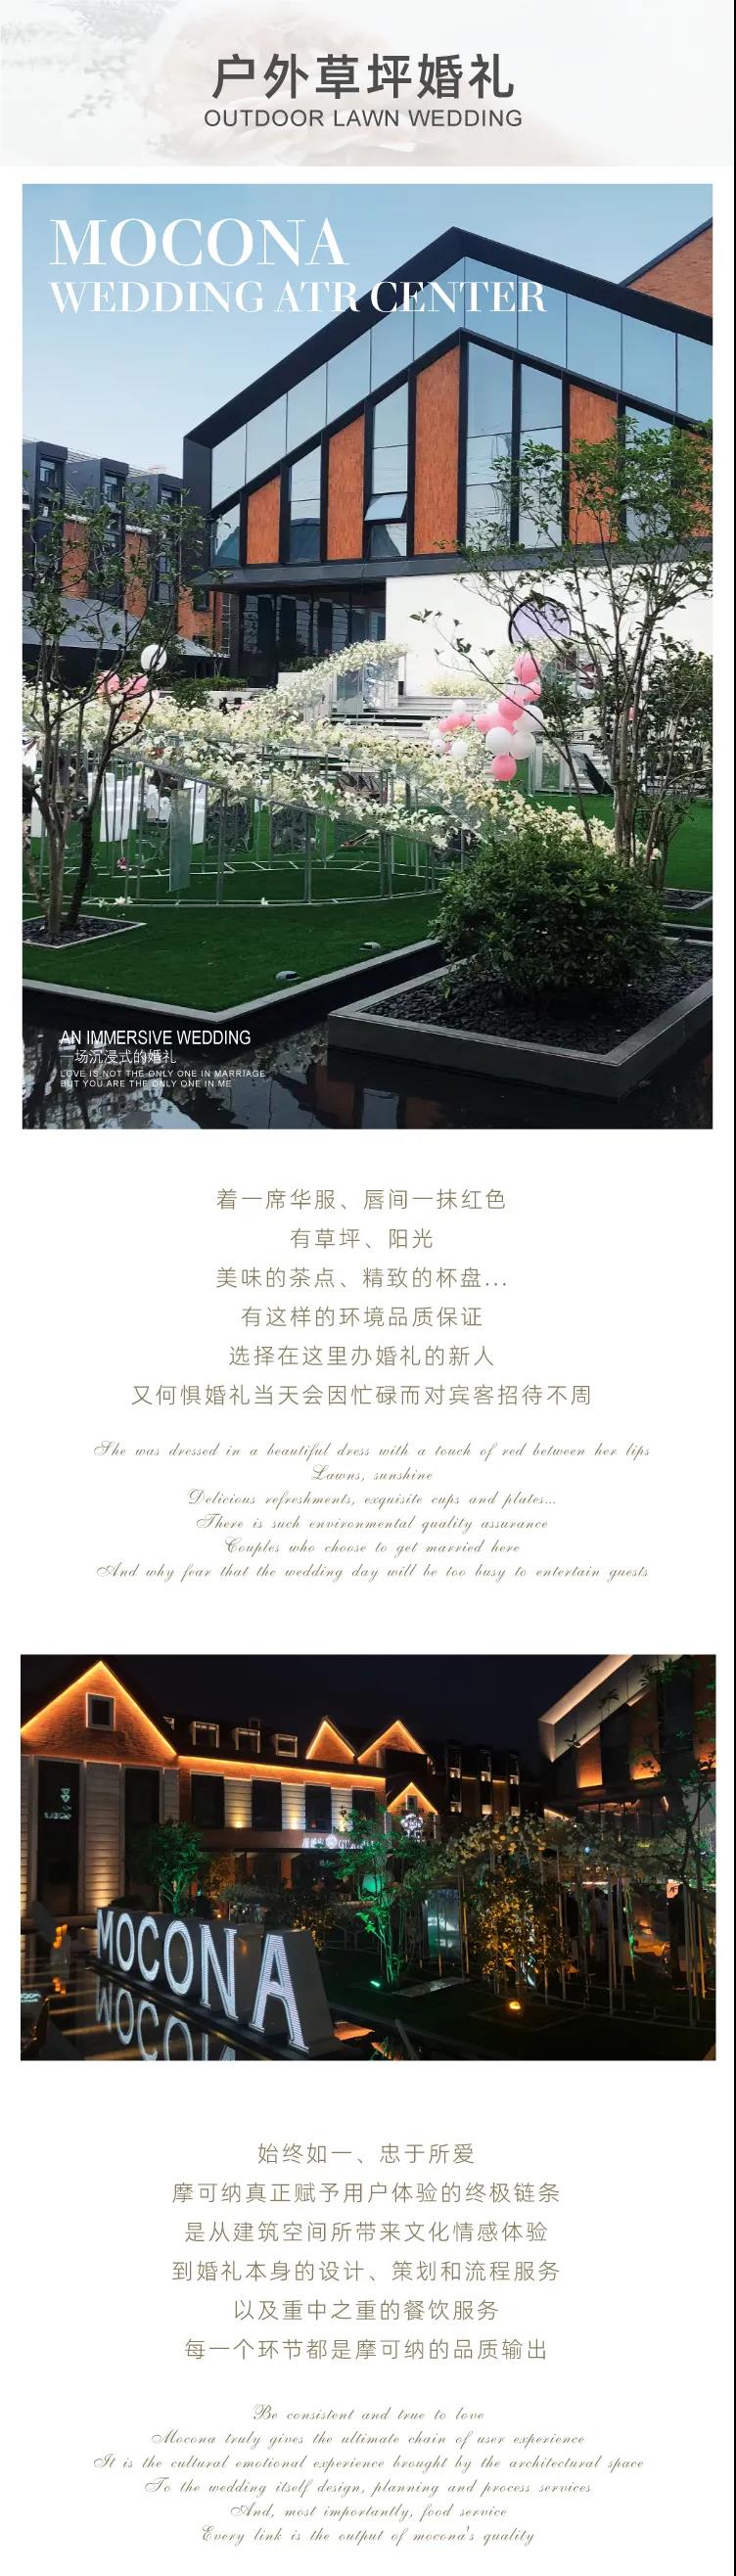 婚礼堂发布：上海摩可纳婚礼艺术中心全新主题【保丽宫】  第5张